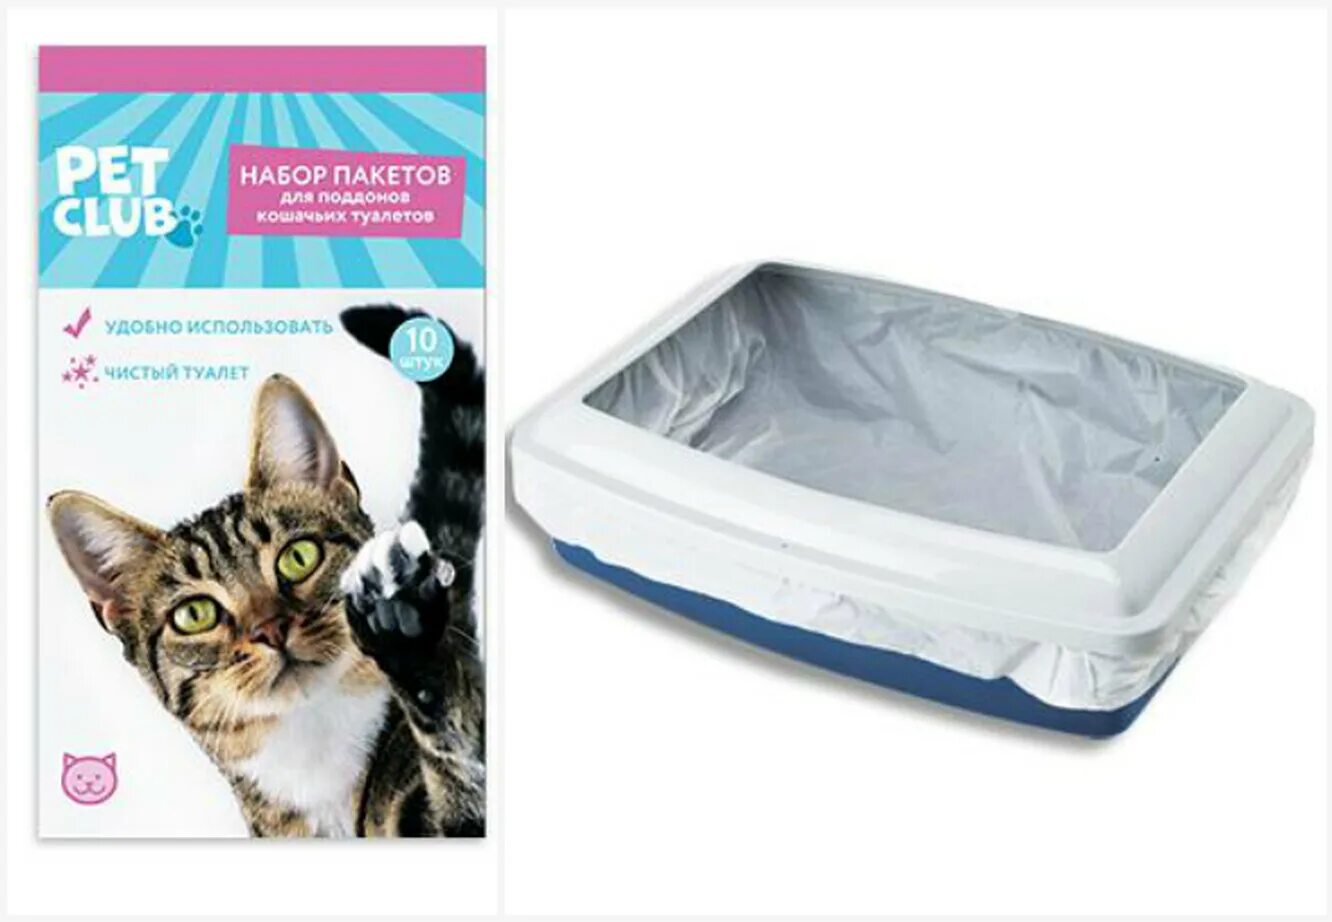 Пакеты для кошачьего лотка. Лоток для кошек. Пакеты для кошачьего туалета. Пакеты для лотка для кошек.